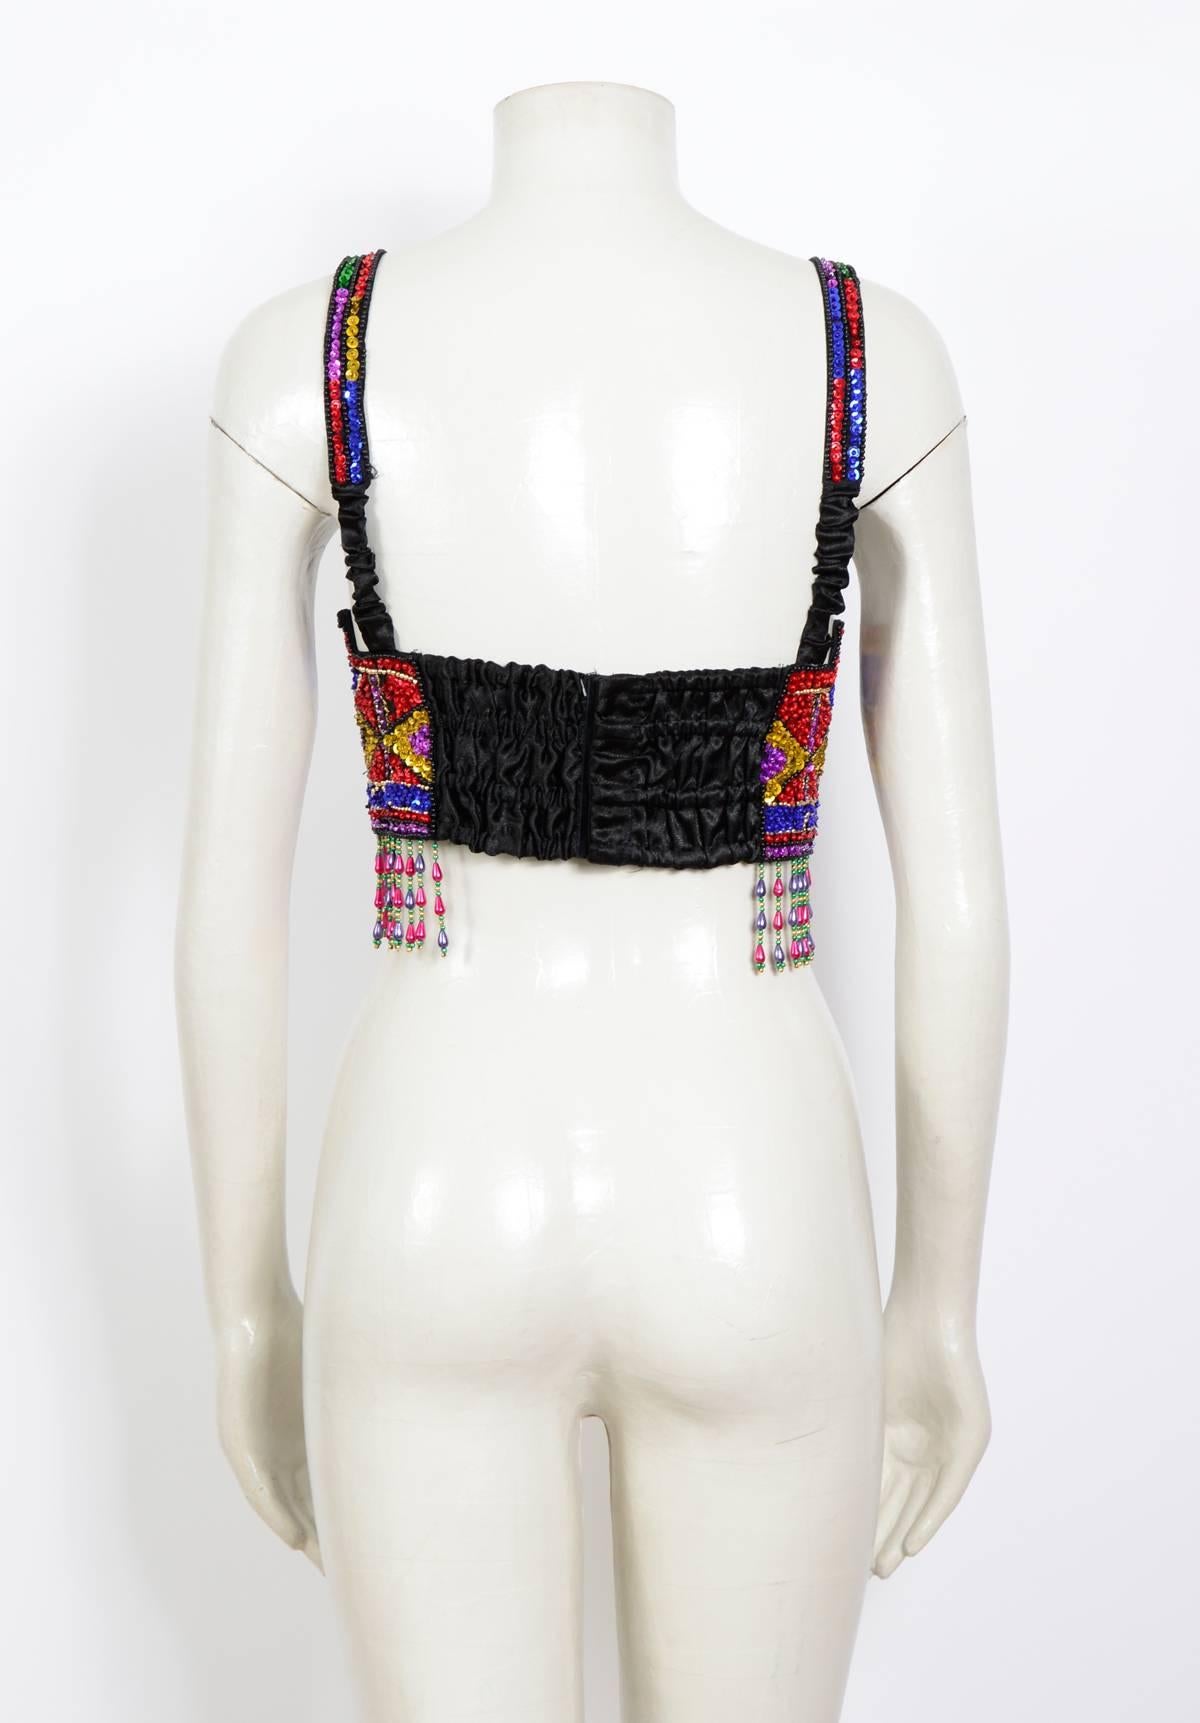 Women's Vintage 1980s Sequin Bra Top